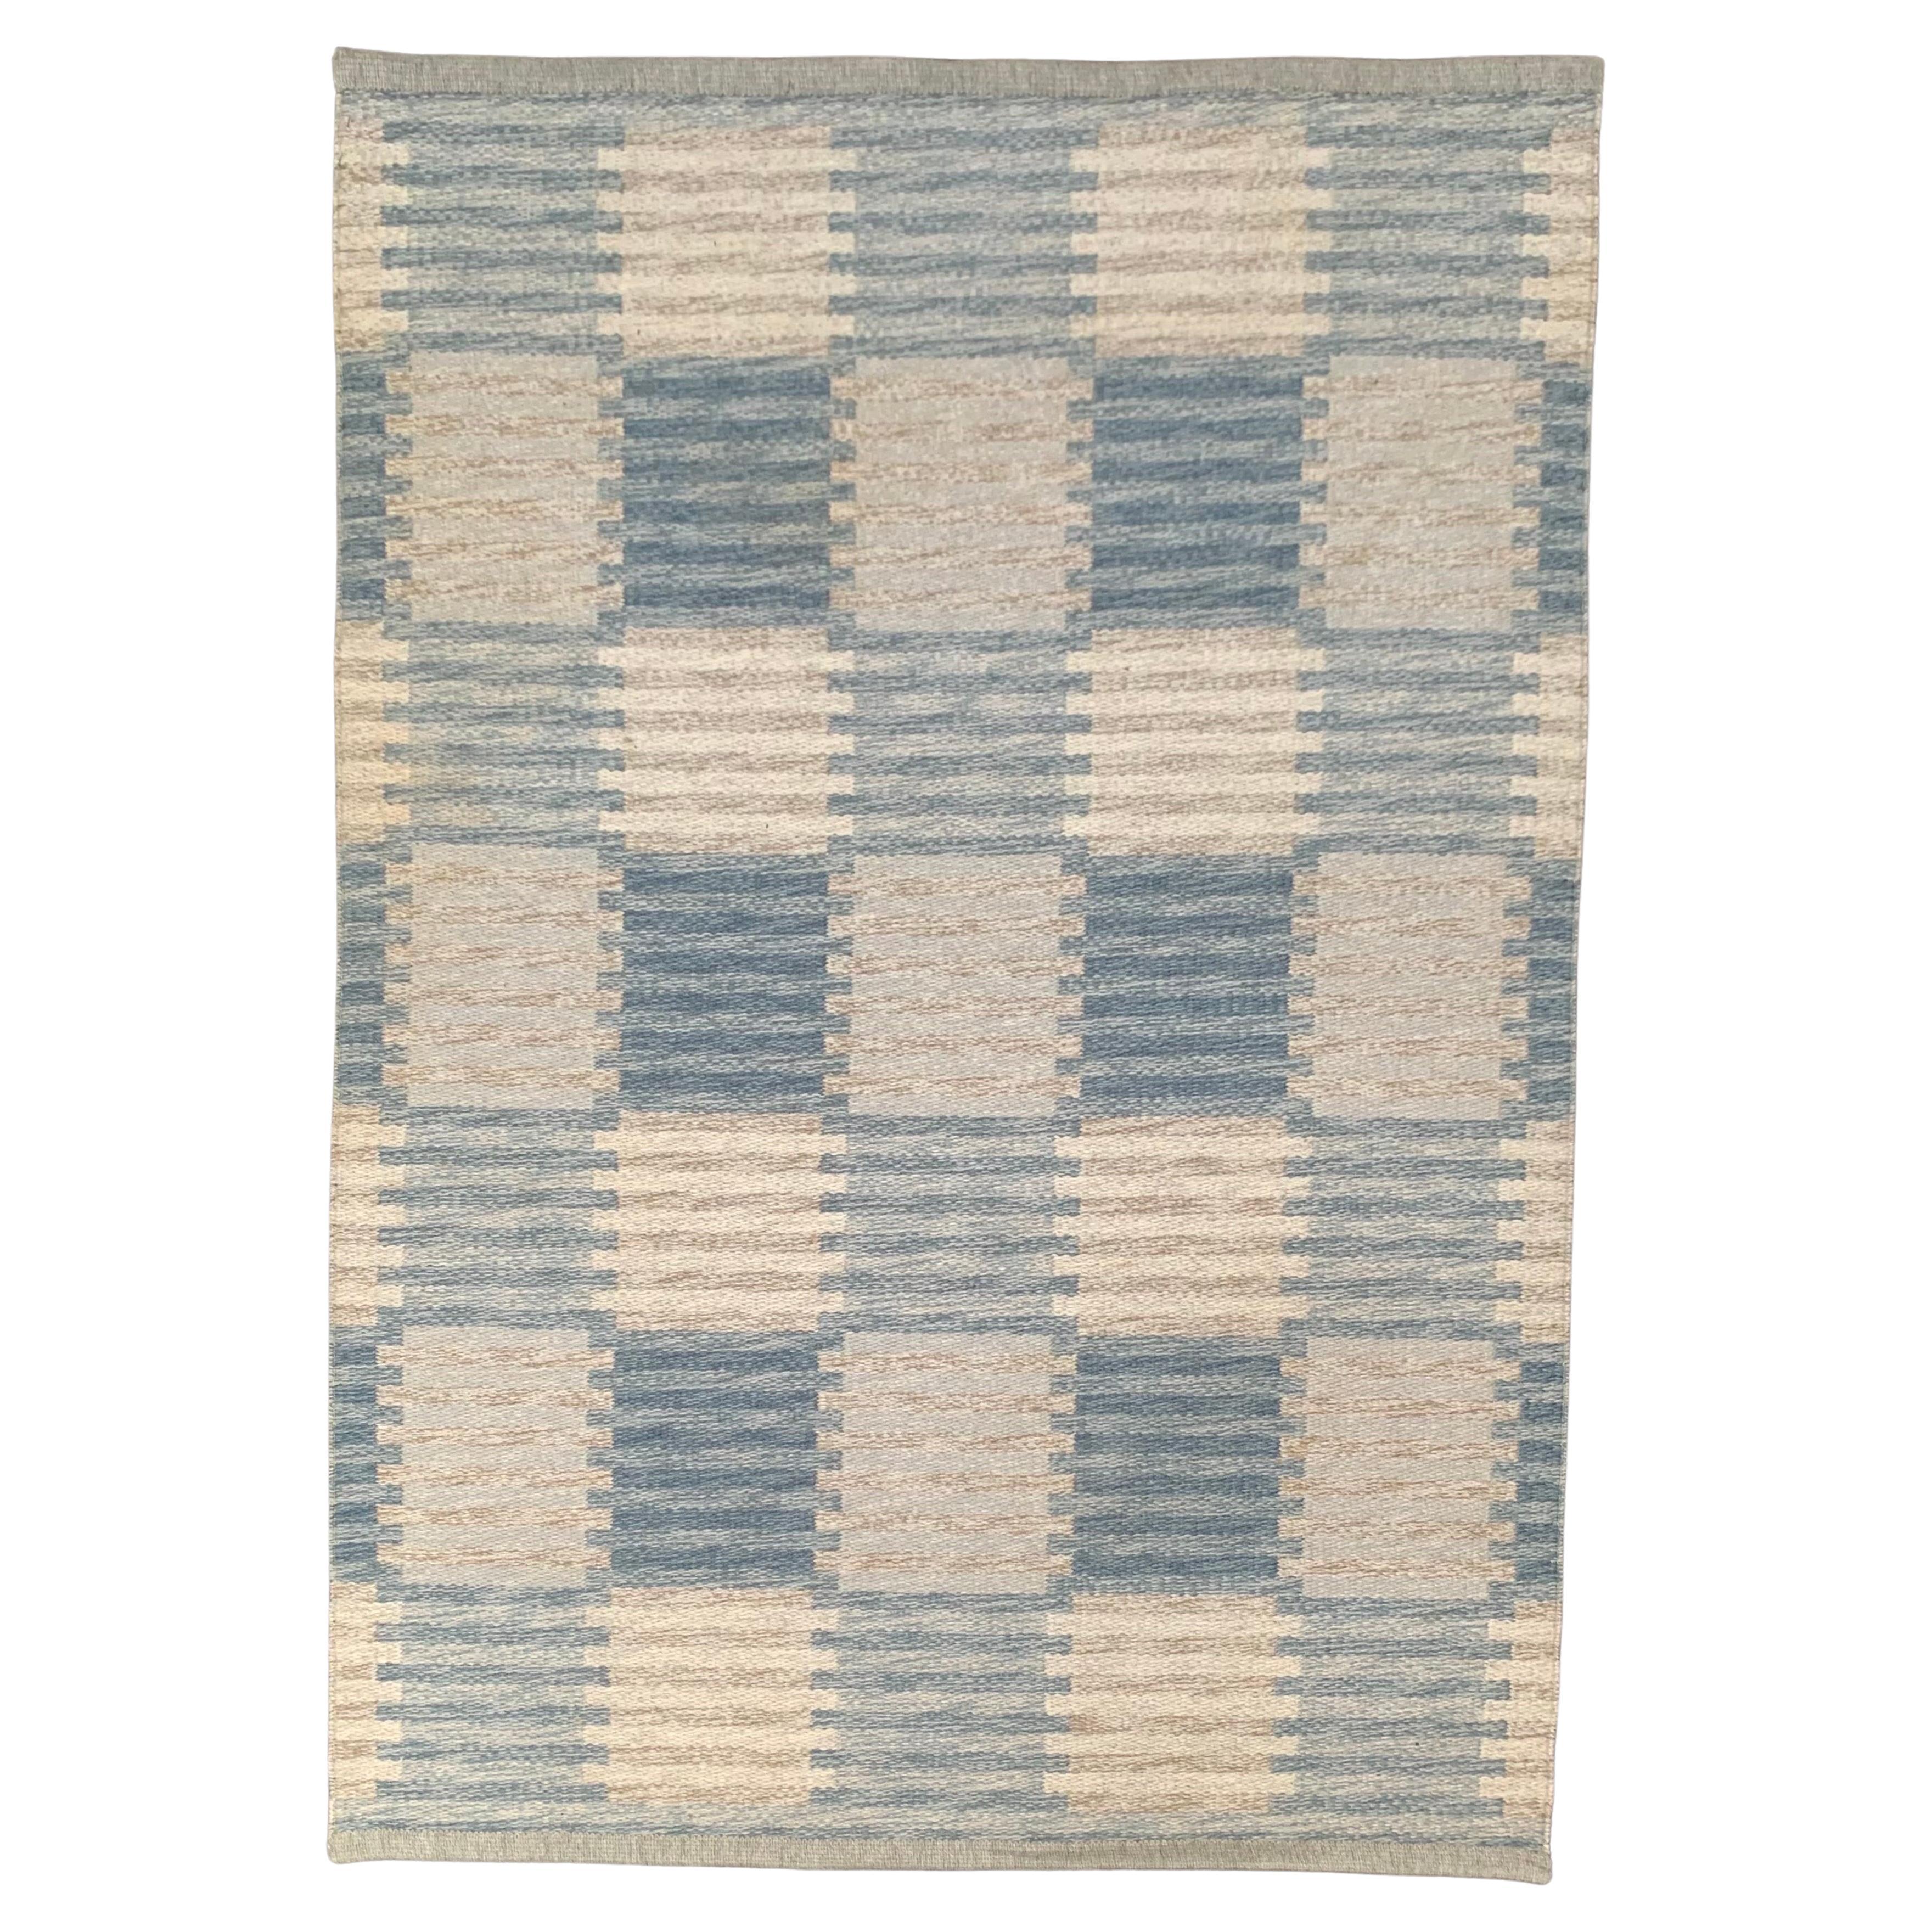 Carl Malmsten, tapis suédois à motif géométrique en laine bleu/gris, fabriqué à la main, années 1950